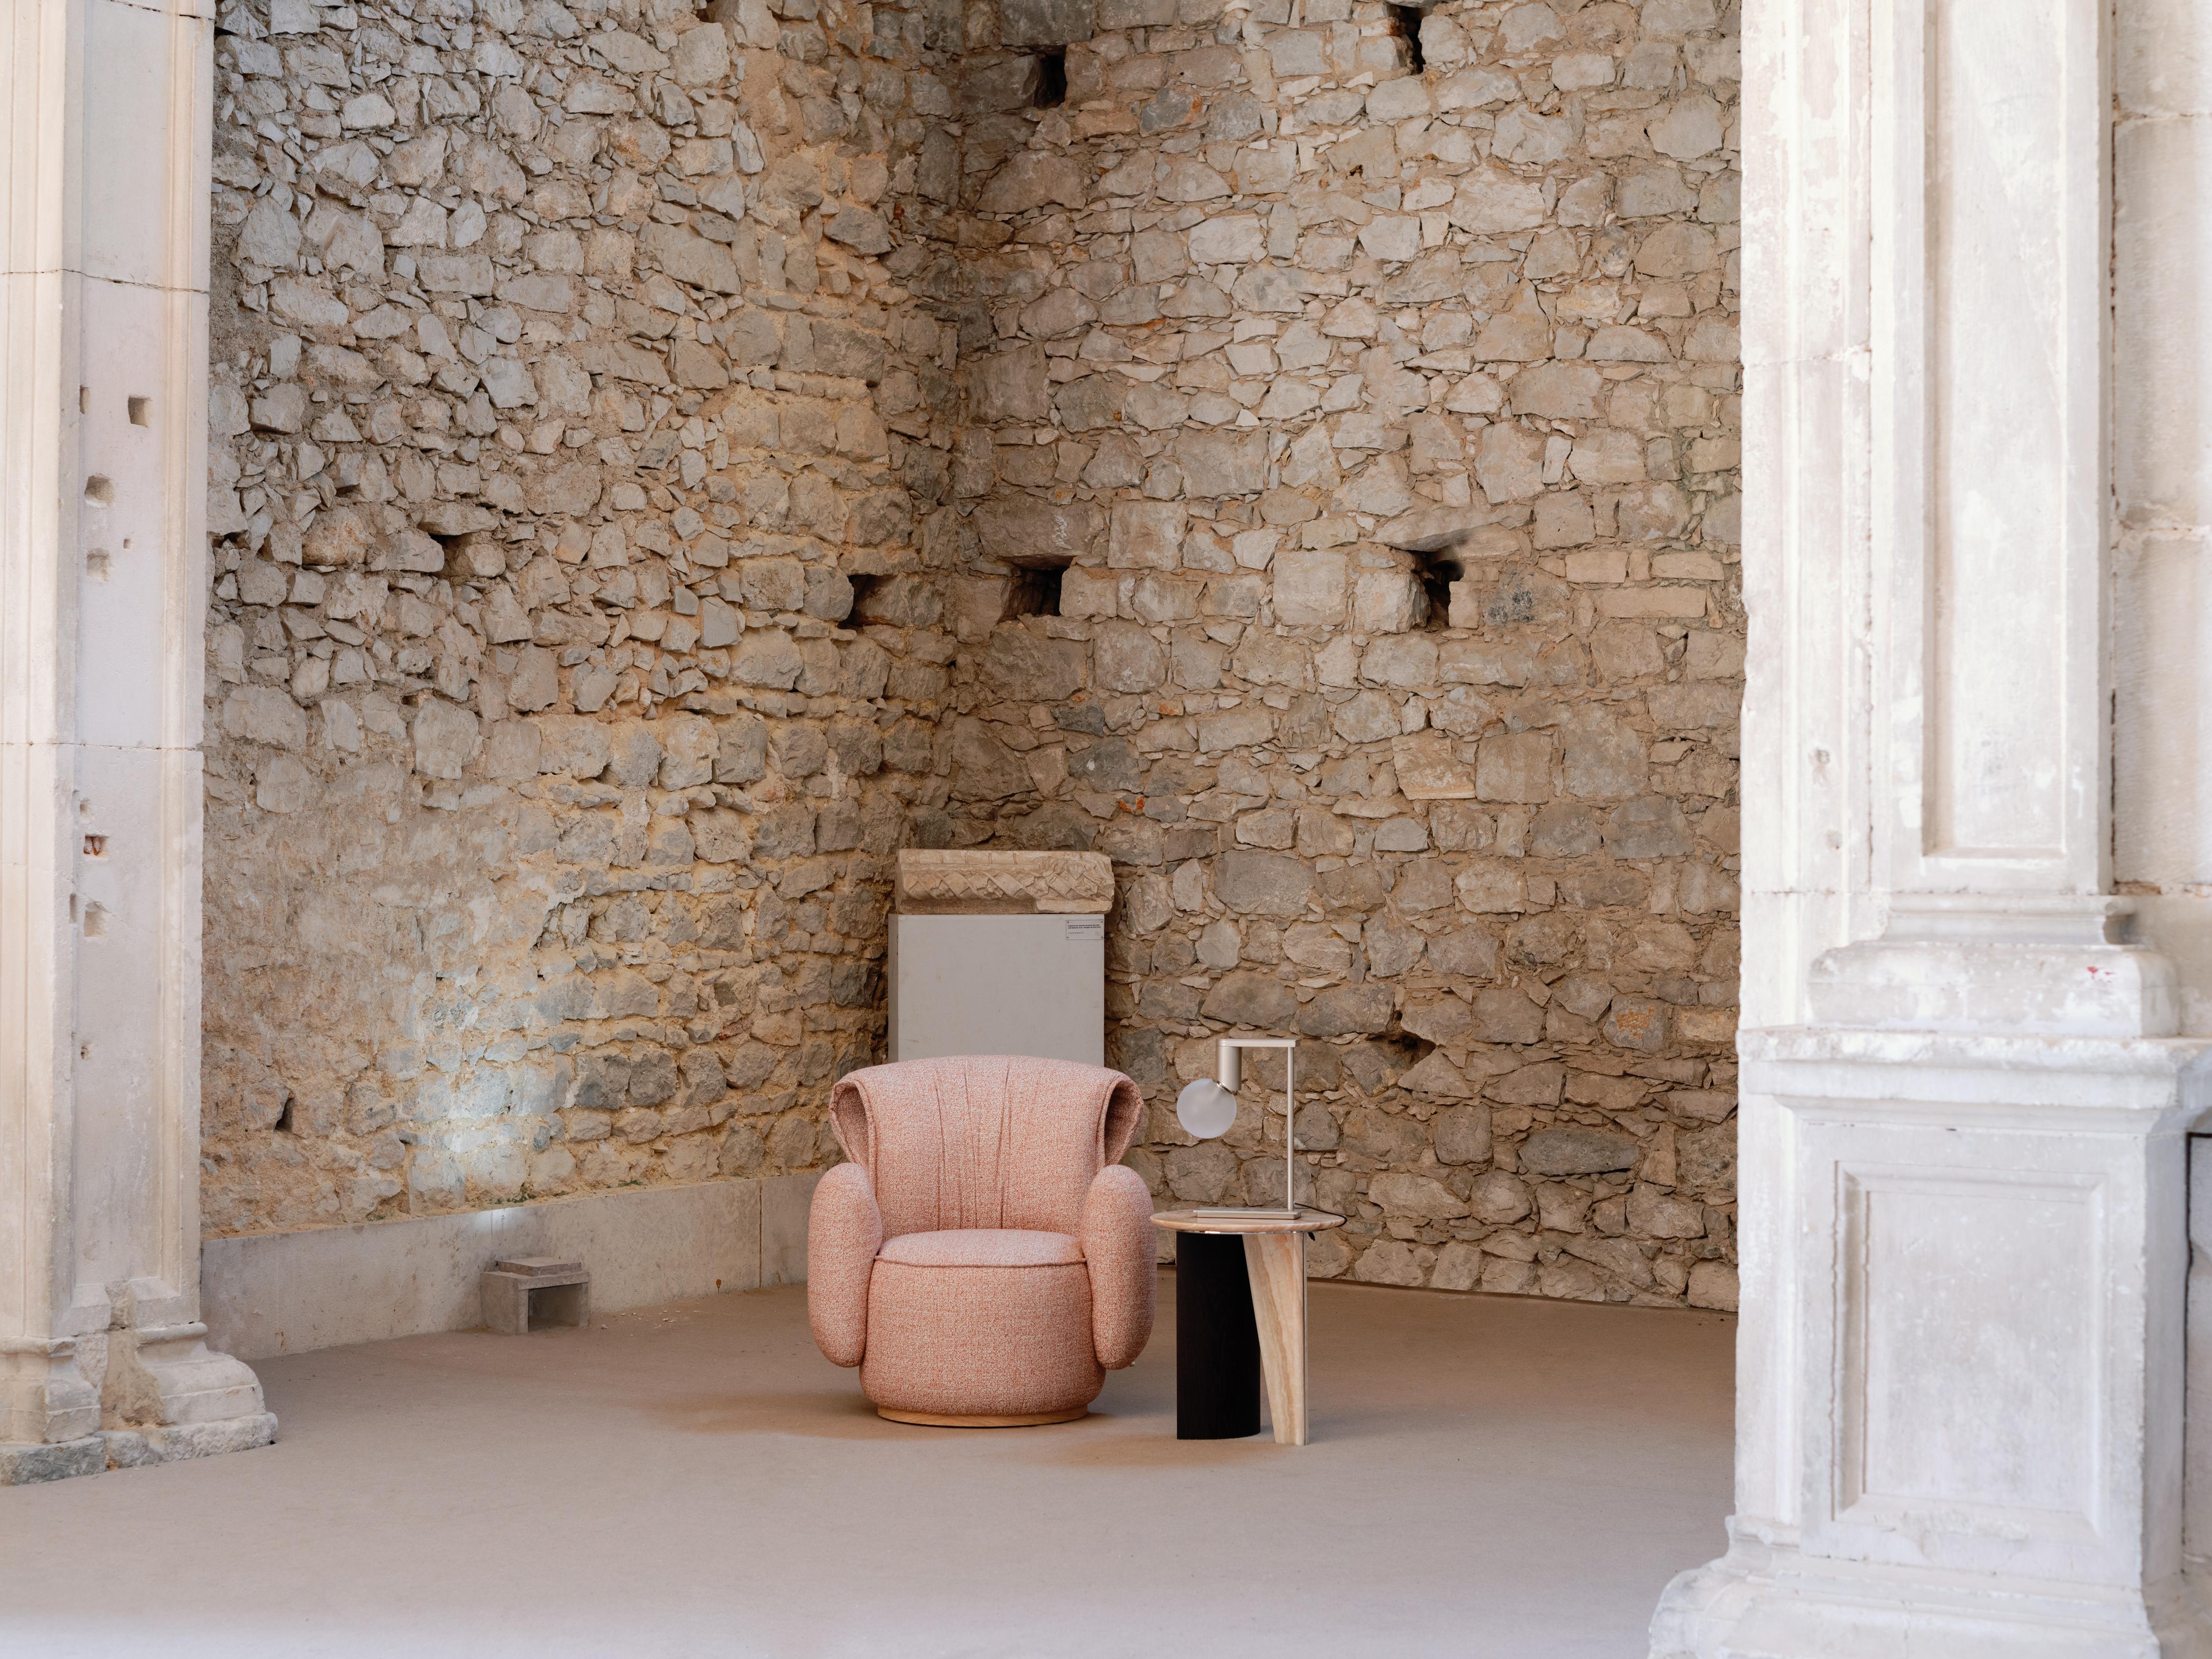 Fauteuil Grass, Collection Contemporary, Fabriqué à la main au Portugal - Europe par Greenapple.

Le fauteuil Grass tire sa forme de la goutte de rosée sur l'herbe, propre à la Nature, et promet un havre de paix pour les matins nuageux. L'artisanat